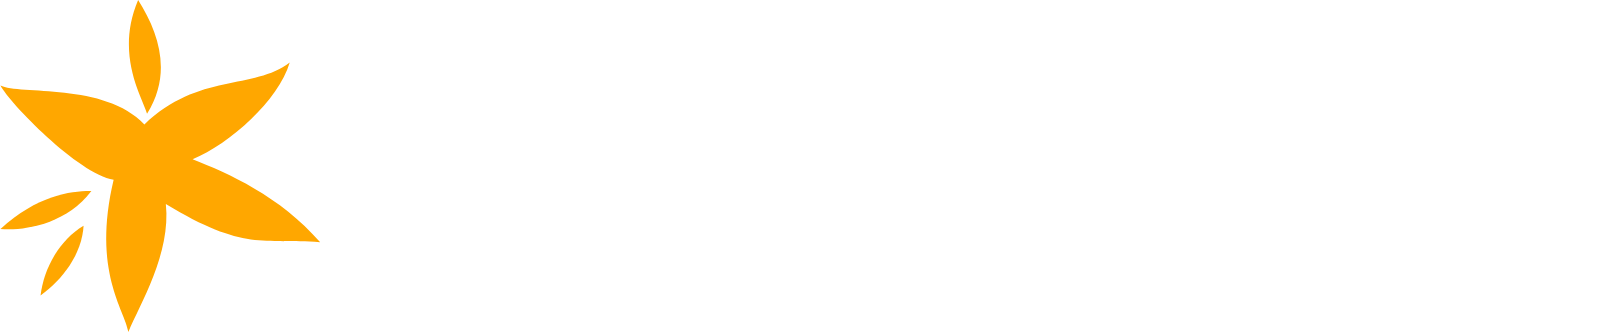 Apria logo large for dark backgrounds (transparent PNG)